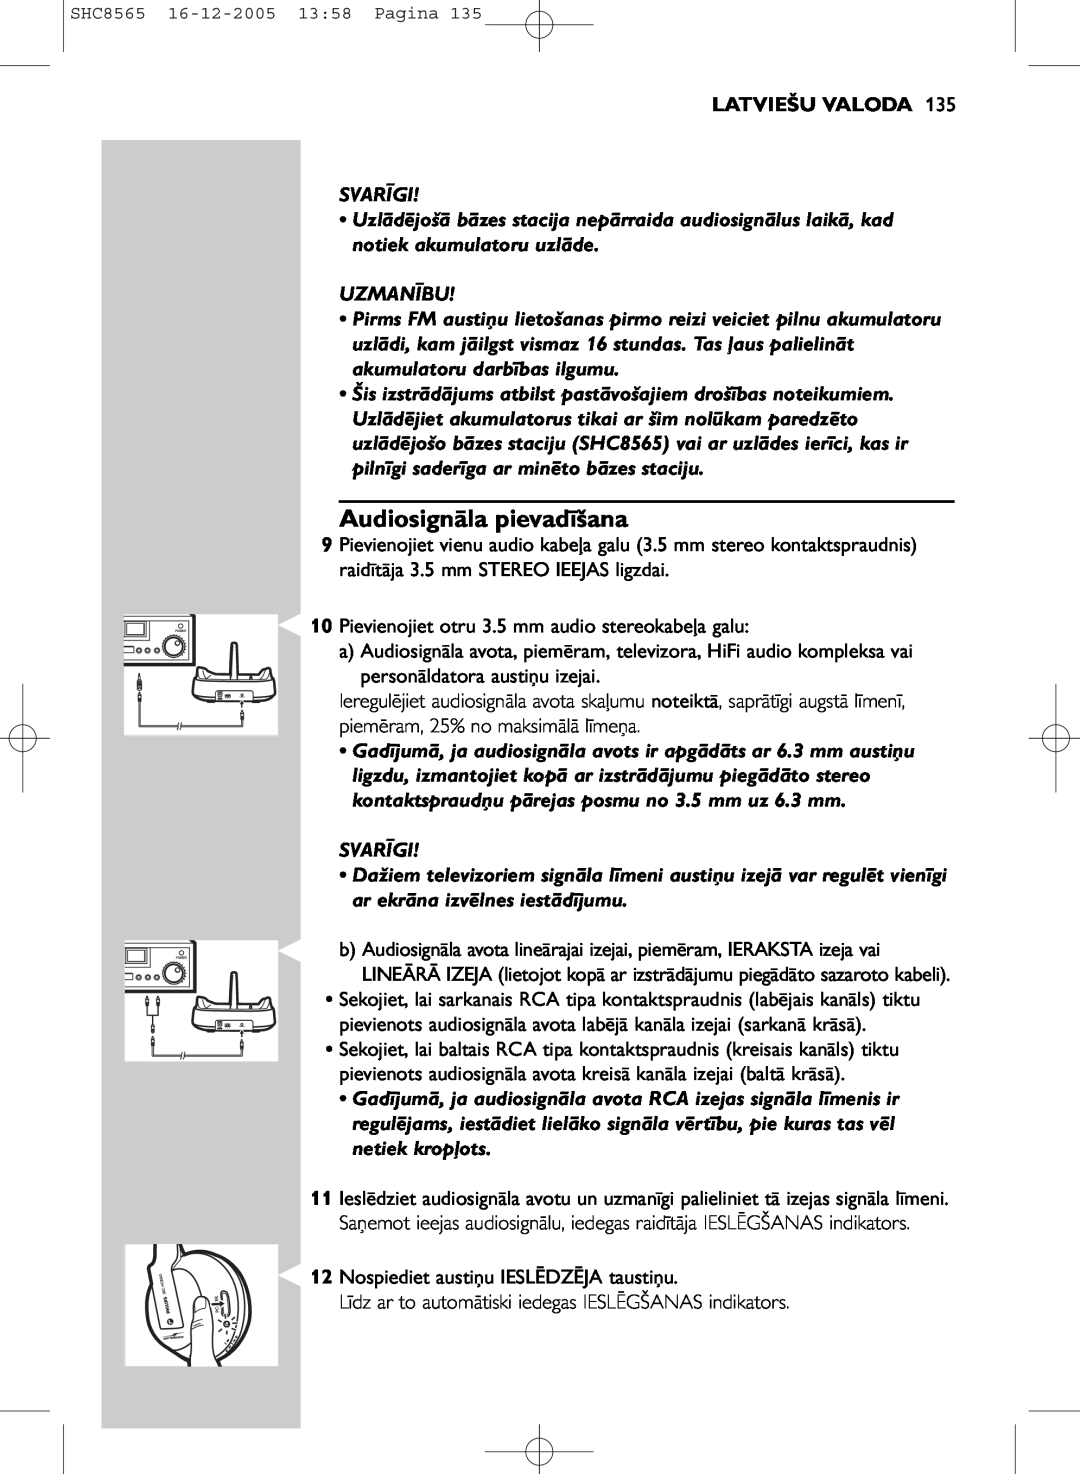 Philips SHC8565 manual Audiosignāla pievadīšana, Latviešu Valoda, Svarīgi, Uzmanību 